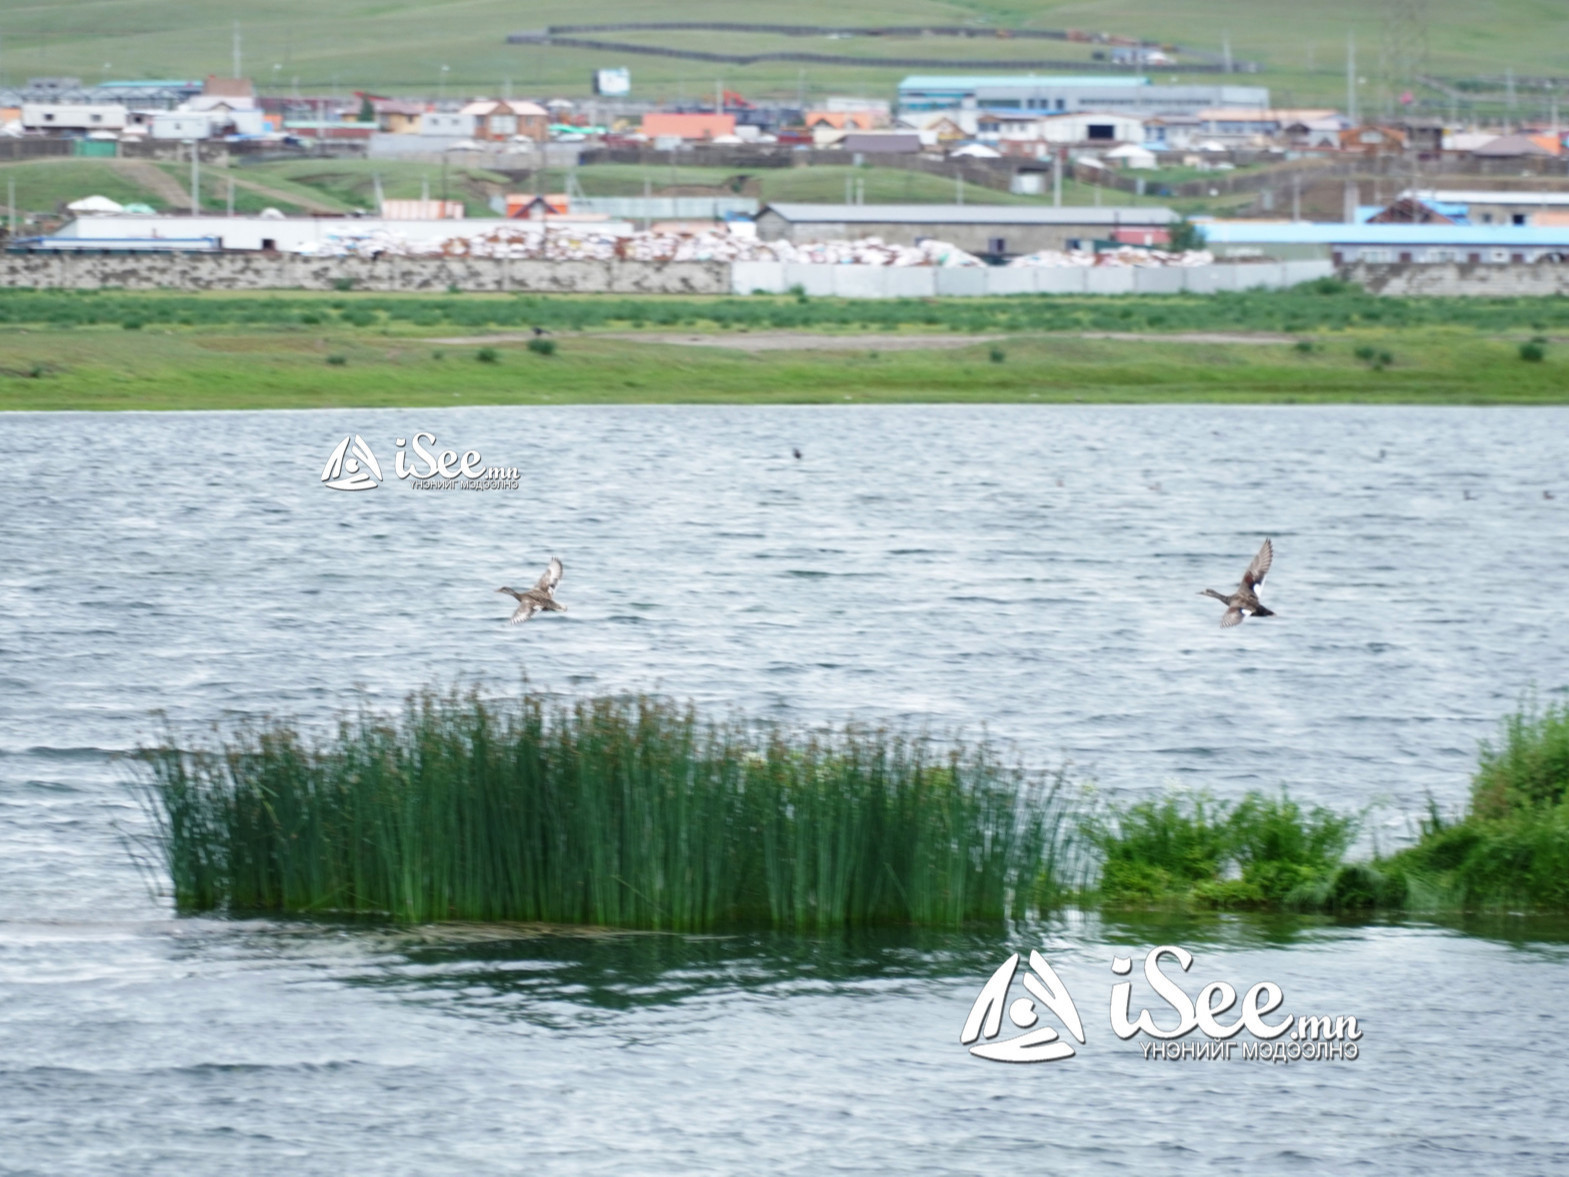 ФОТО: Ховордож буй шувуудын нутаглаж буй Гүн-Галуут орчмын ус намгархаг газрыг хамгаалах төсөл хэрэгжиж эхэллээ